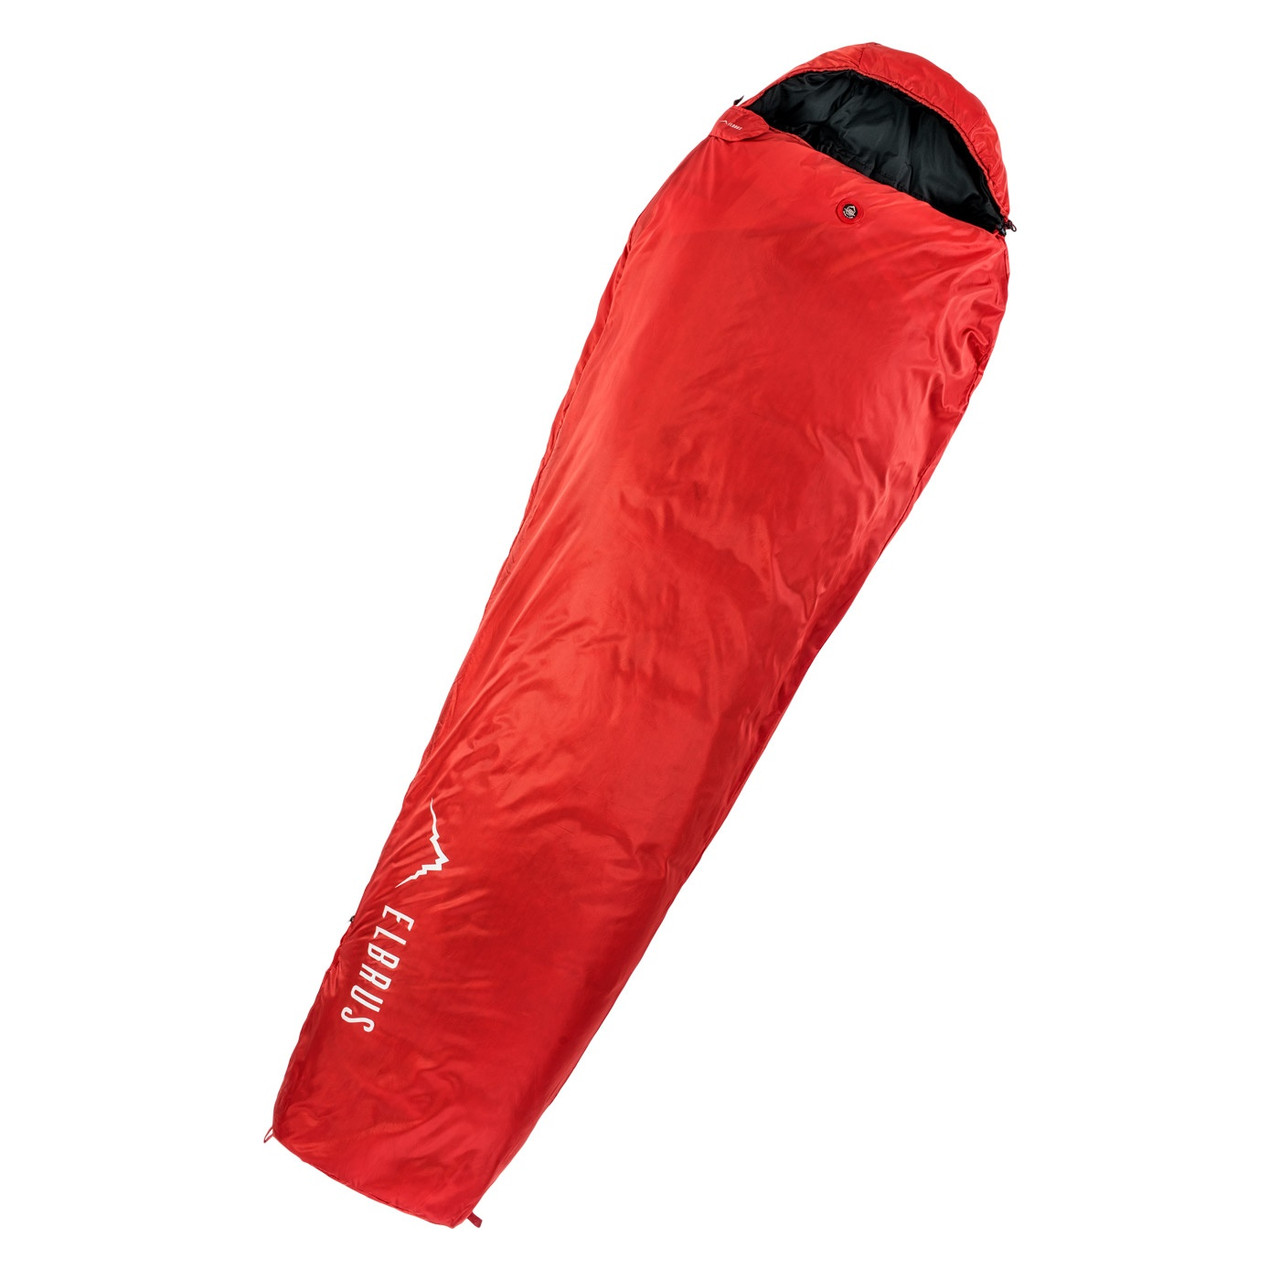 Спальний мішок Elbrus Carrylight 800 220 Чорний з червоним